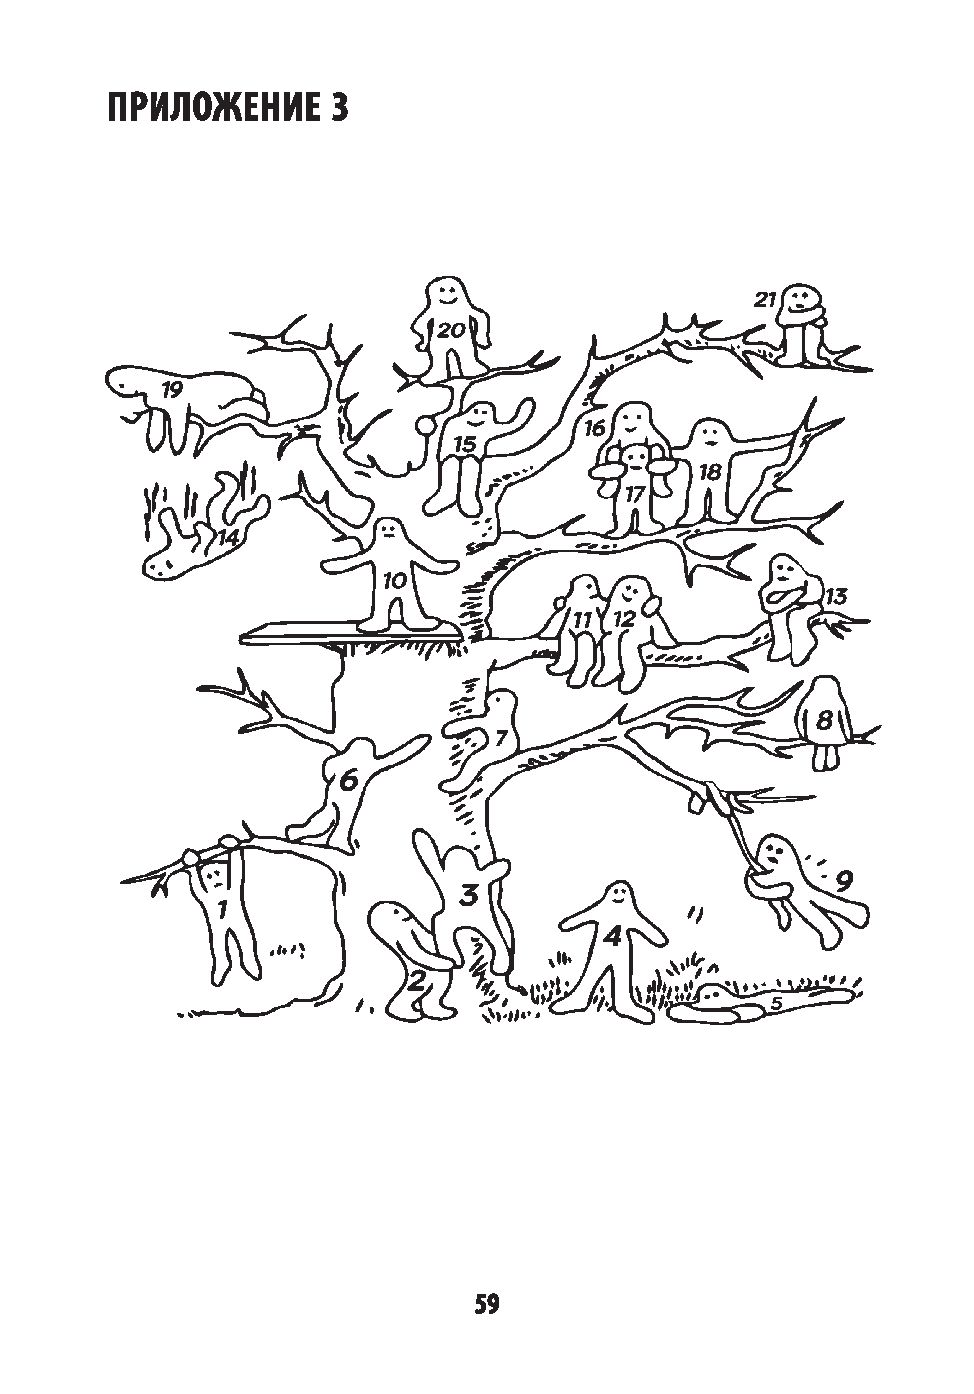 Тест рисуночные методики. Проективная методика дерево Пономаренко. Проективная методика дерево л.п Пономаренко. Методика «дерево с человечками» (д. Лампен, л. п. Пономаренко). «Дерево с человечками» (Автор д.Лампен) адаптировал л.п. Пономаренко.